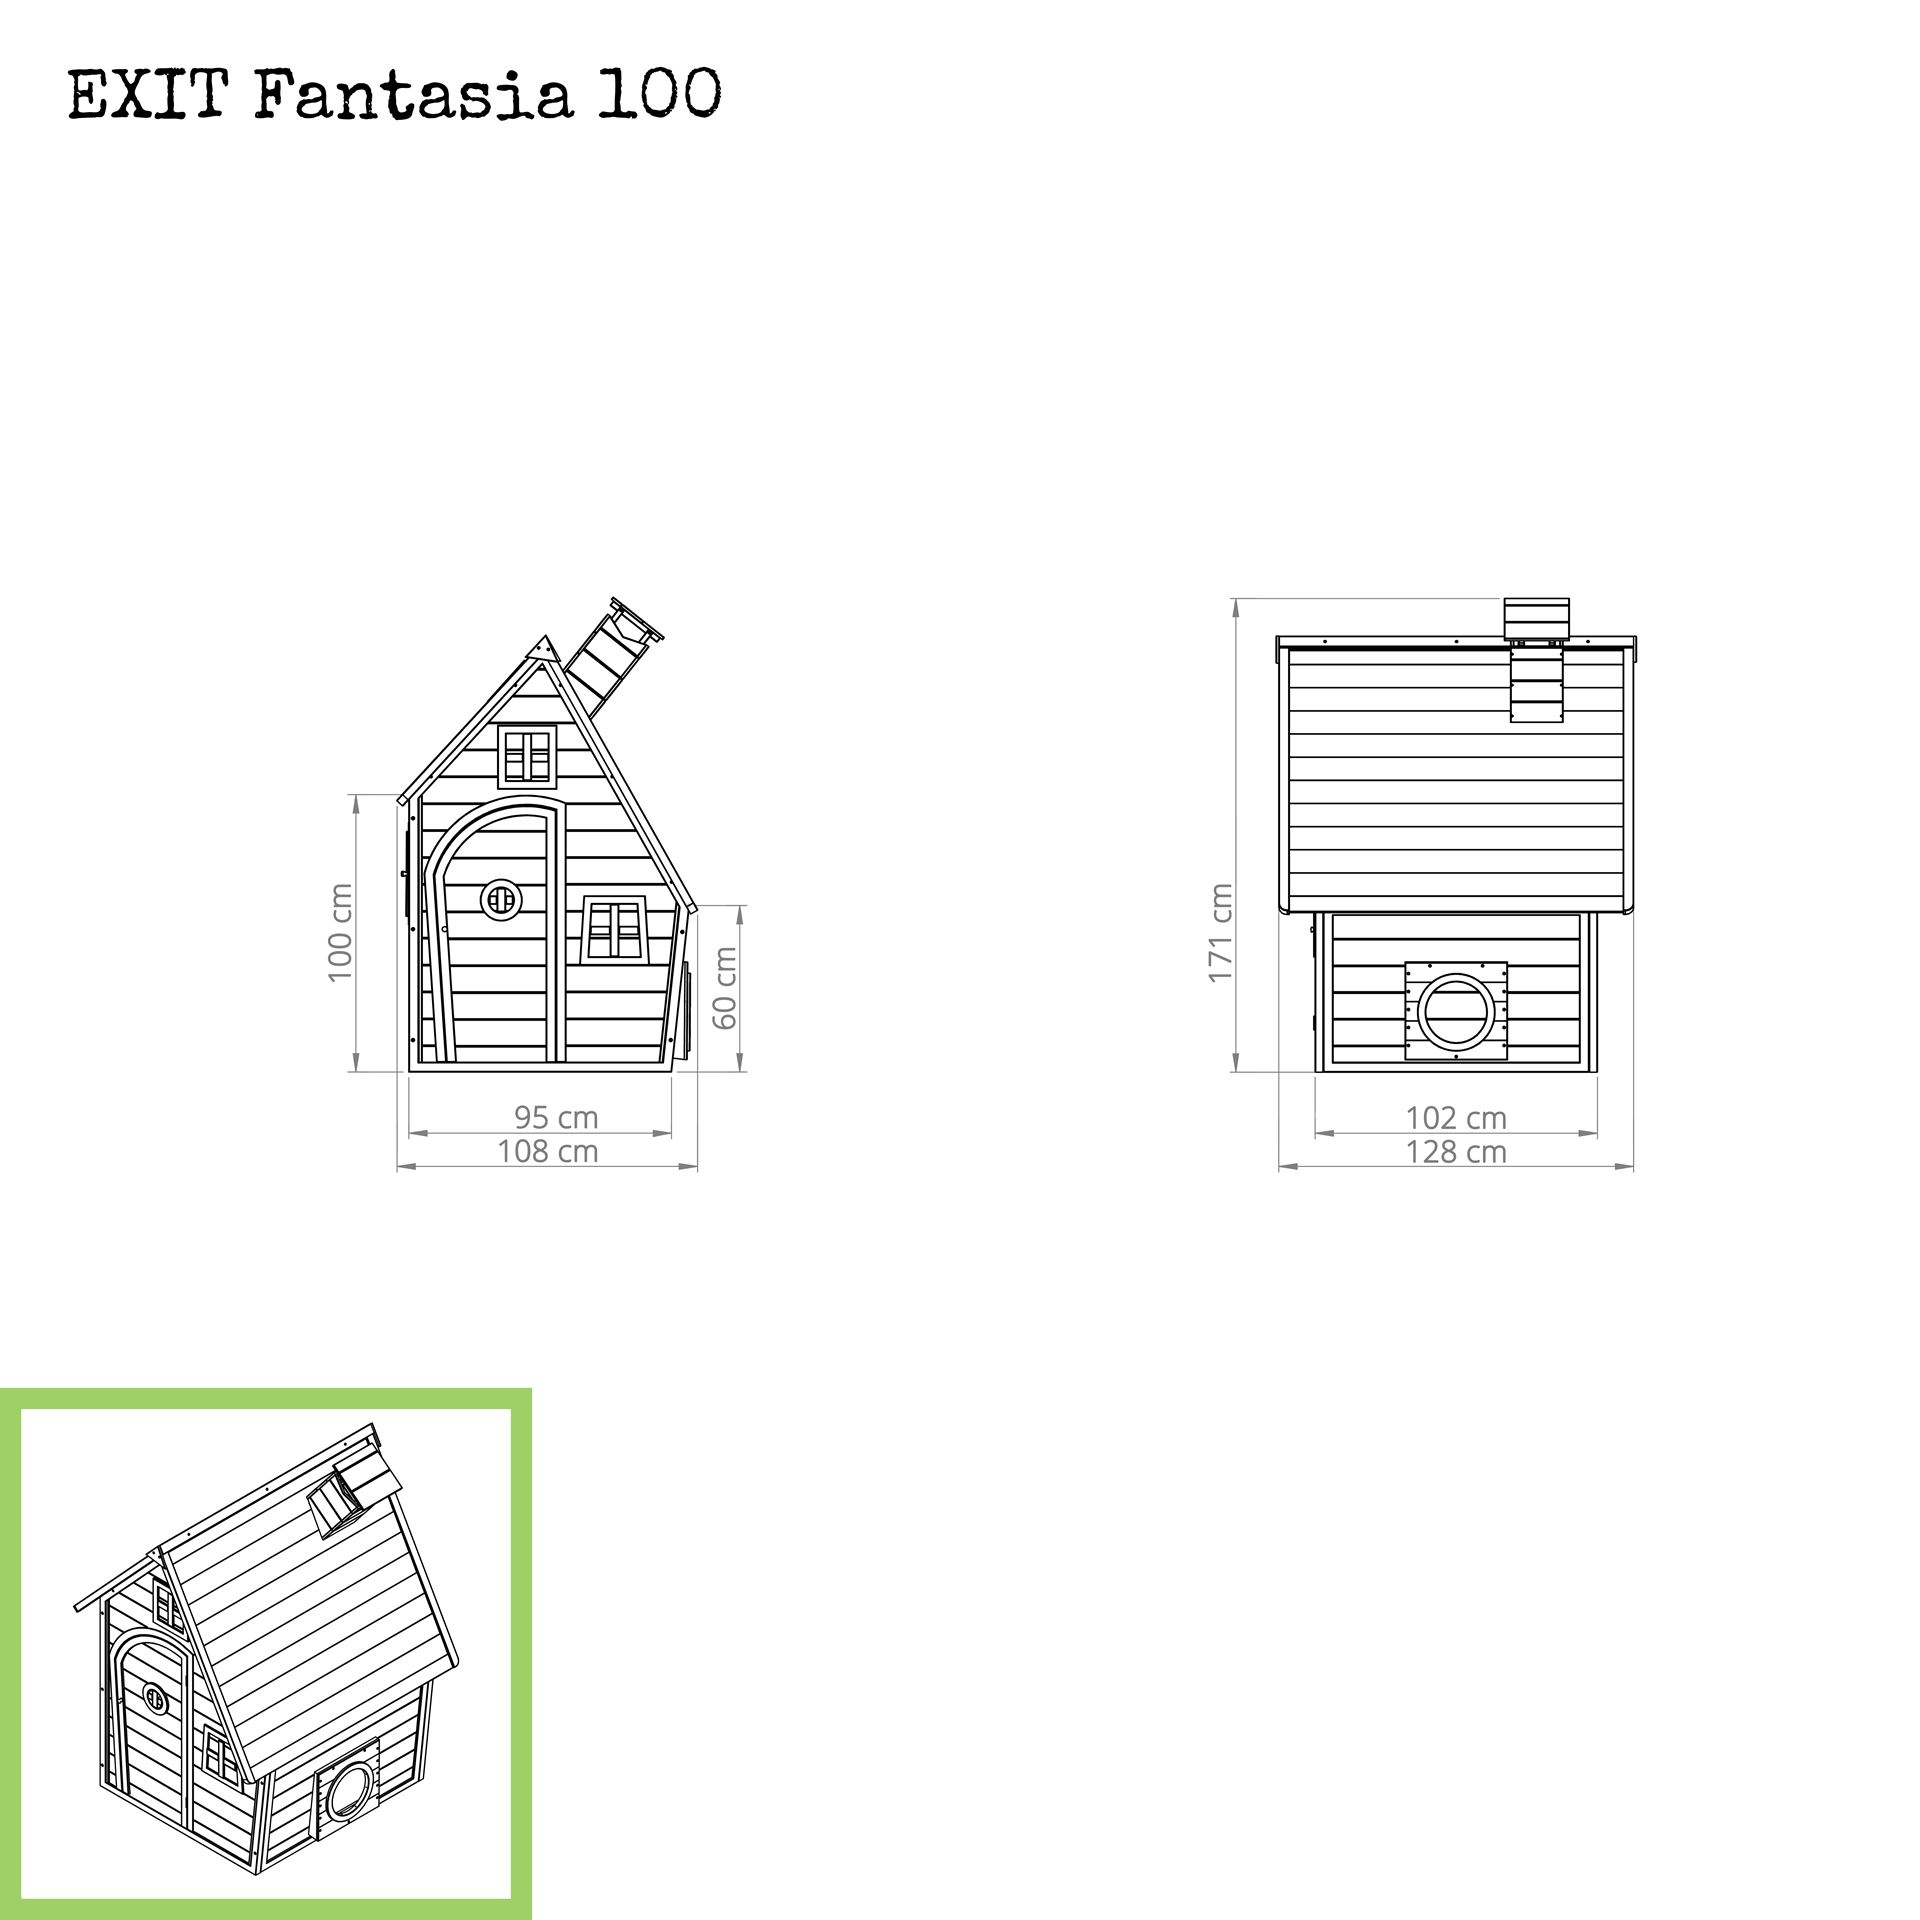 EXIT-Fantasia-100-houten-speelhuis-groen